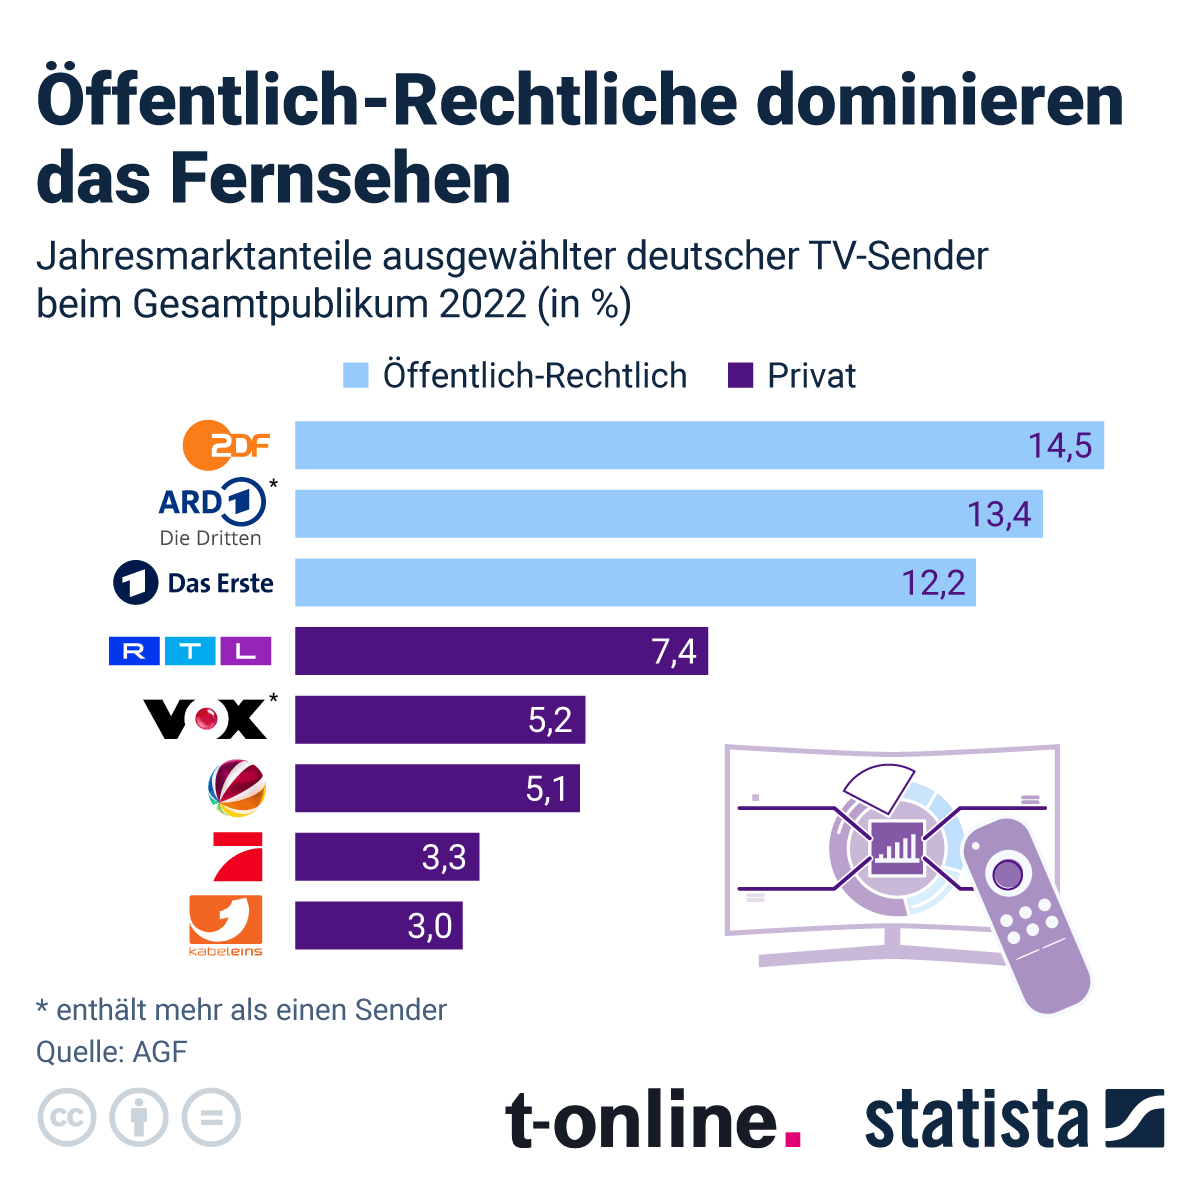 Welche TV-Sender dominieren in Deutschland?